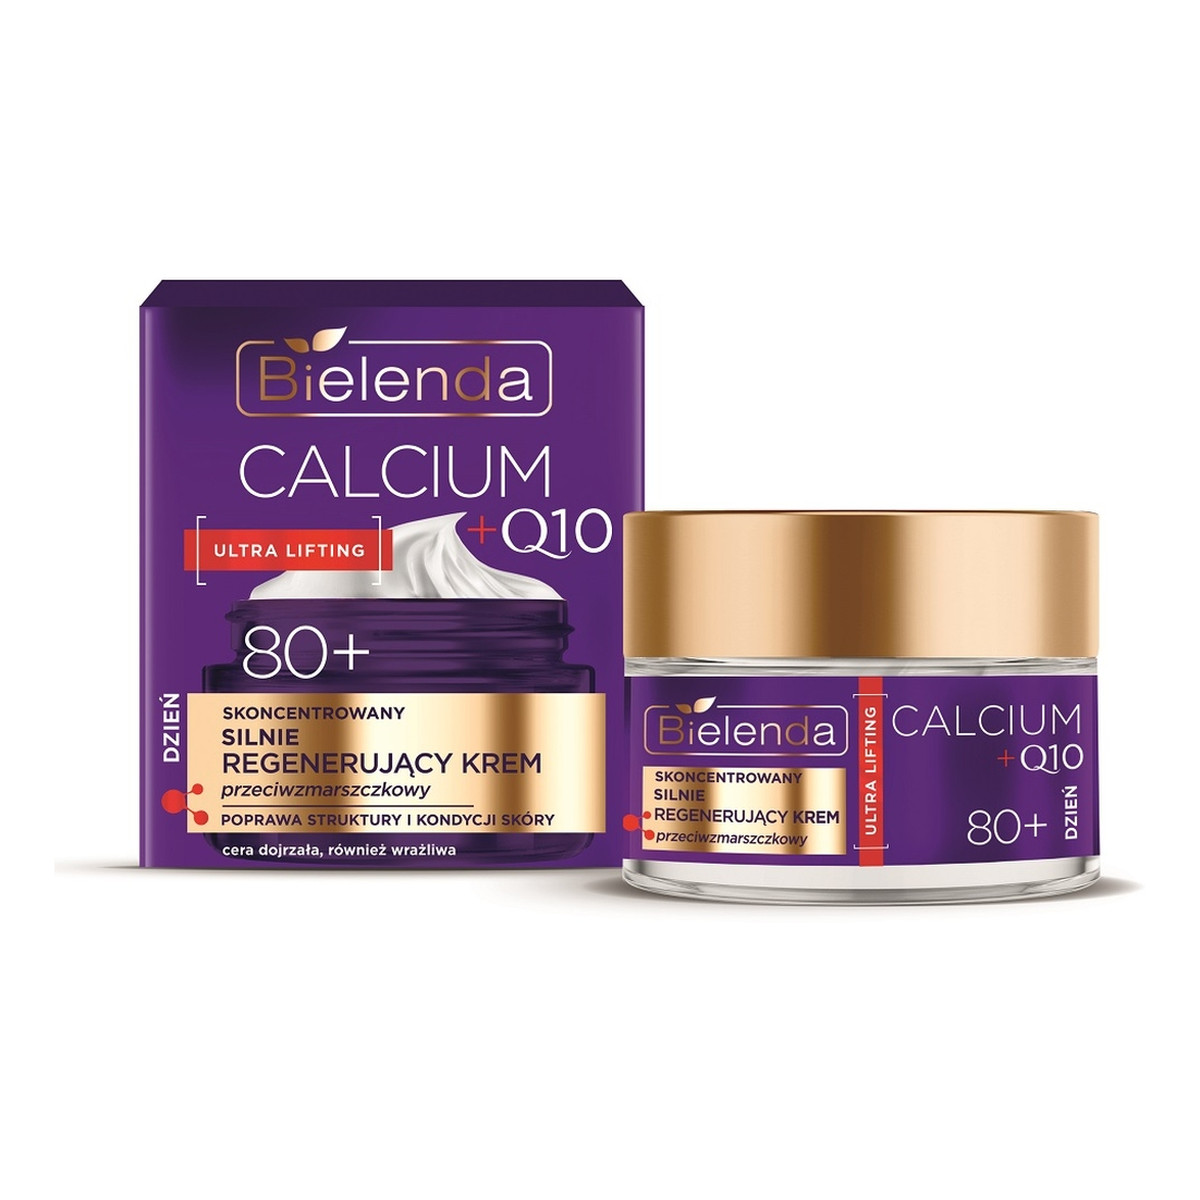 Bielenda Calcium + Q10 skoncentrowany silnie regenerujący Krem przeciwzmarszczkowy na dzień 80+ 50ml